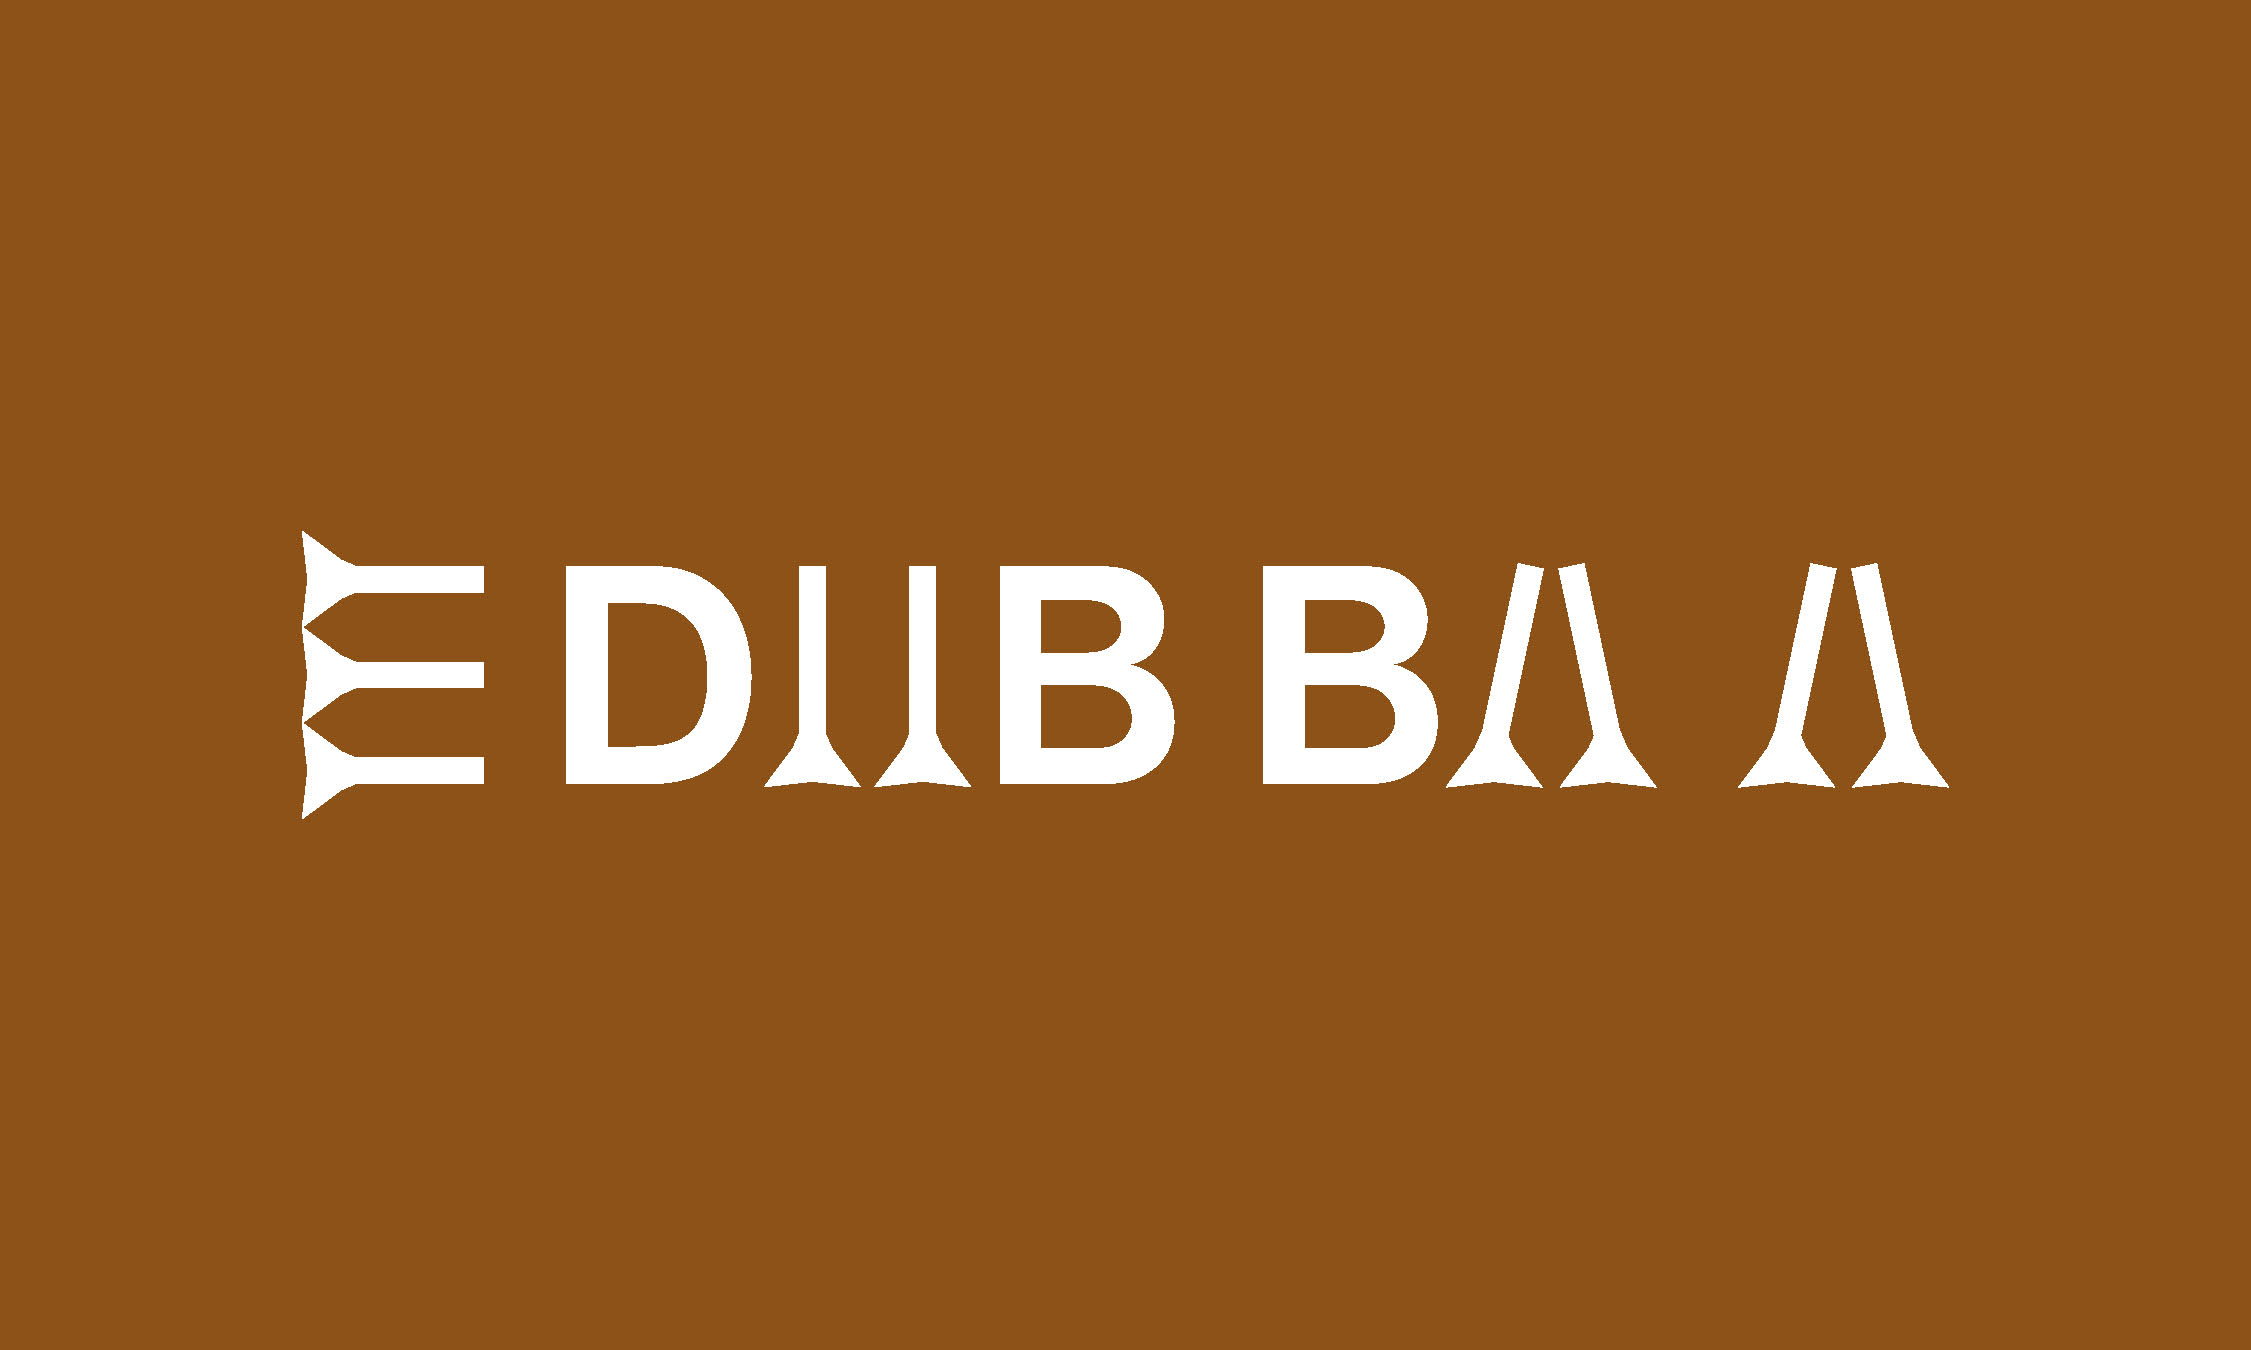 Edubbaa - základní škola, s.r.o. , Záblatí